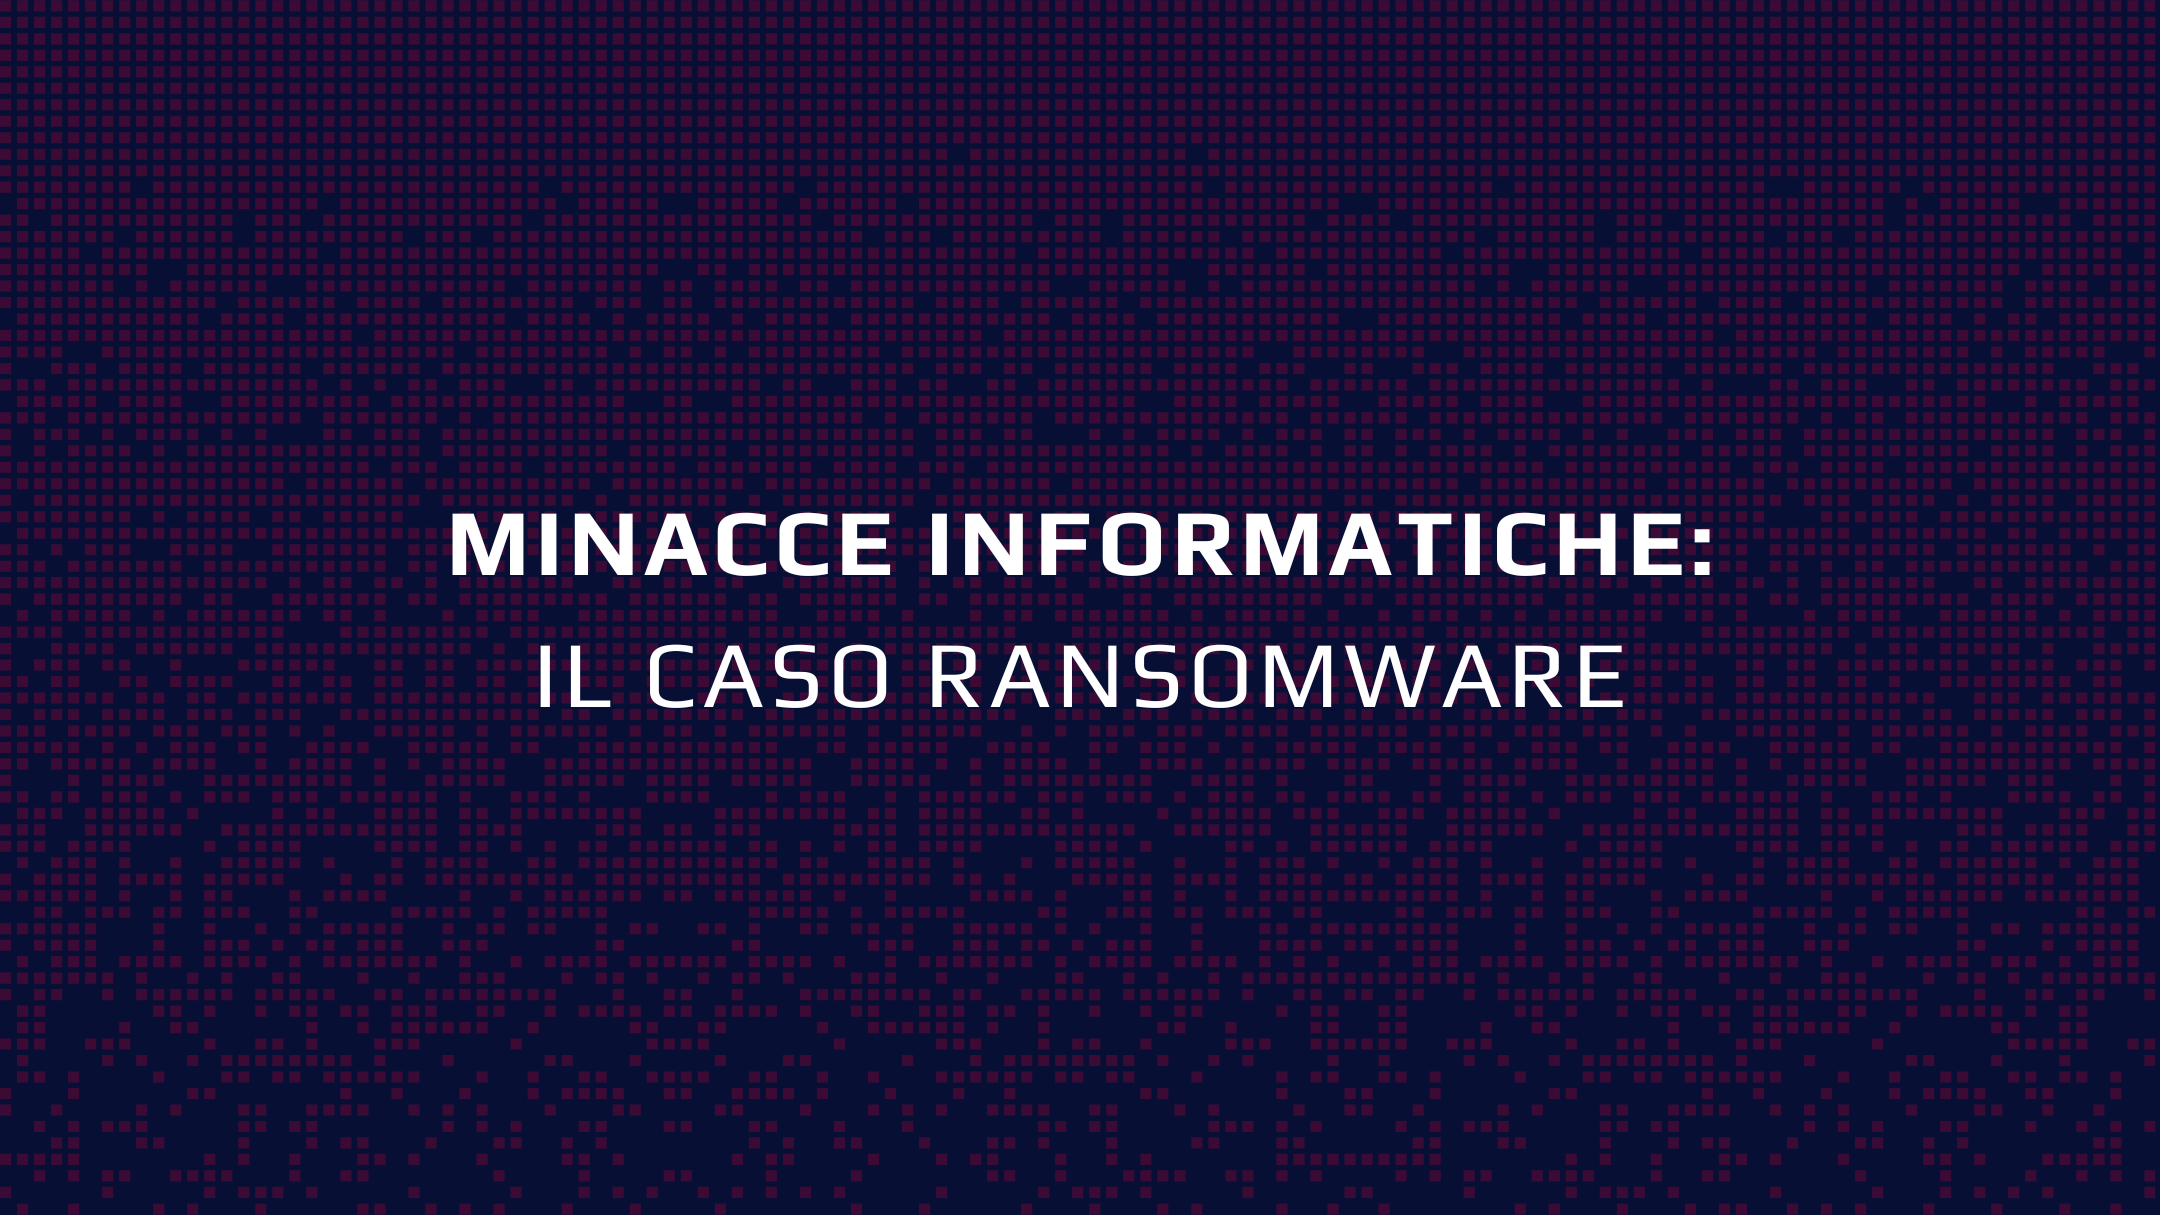 Minacce informatiche_Ransomware